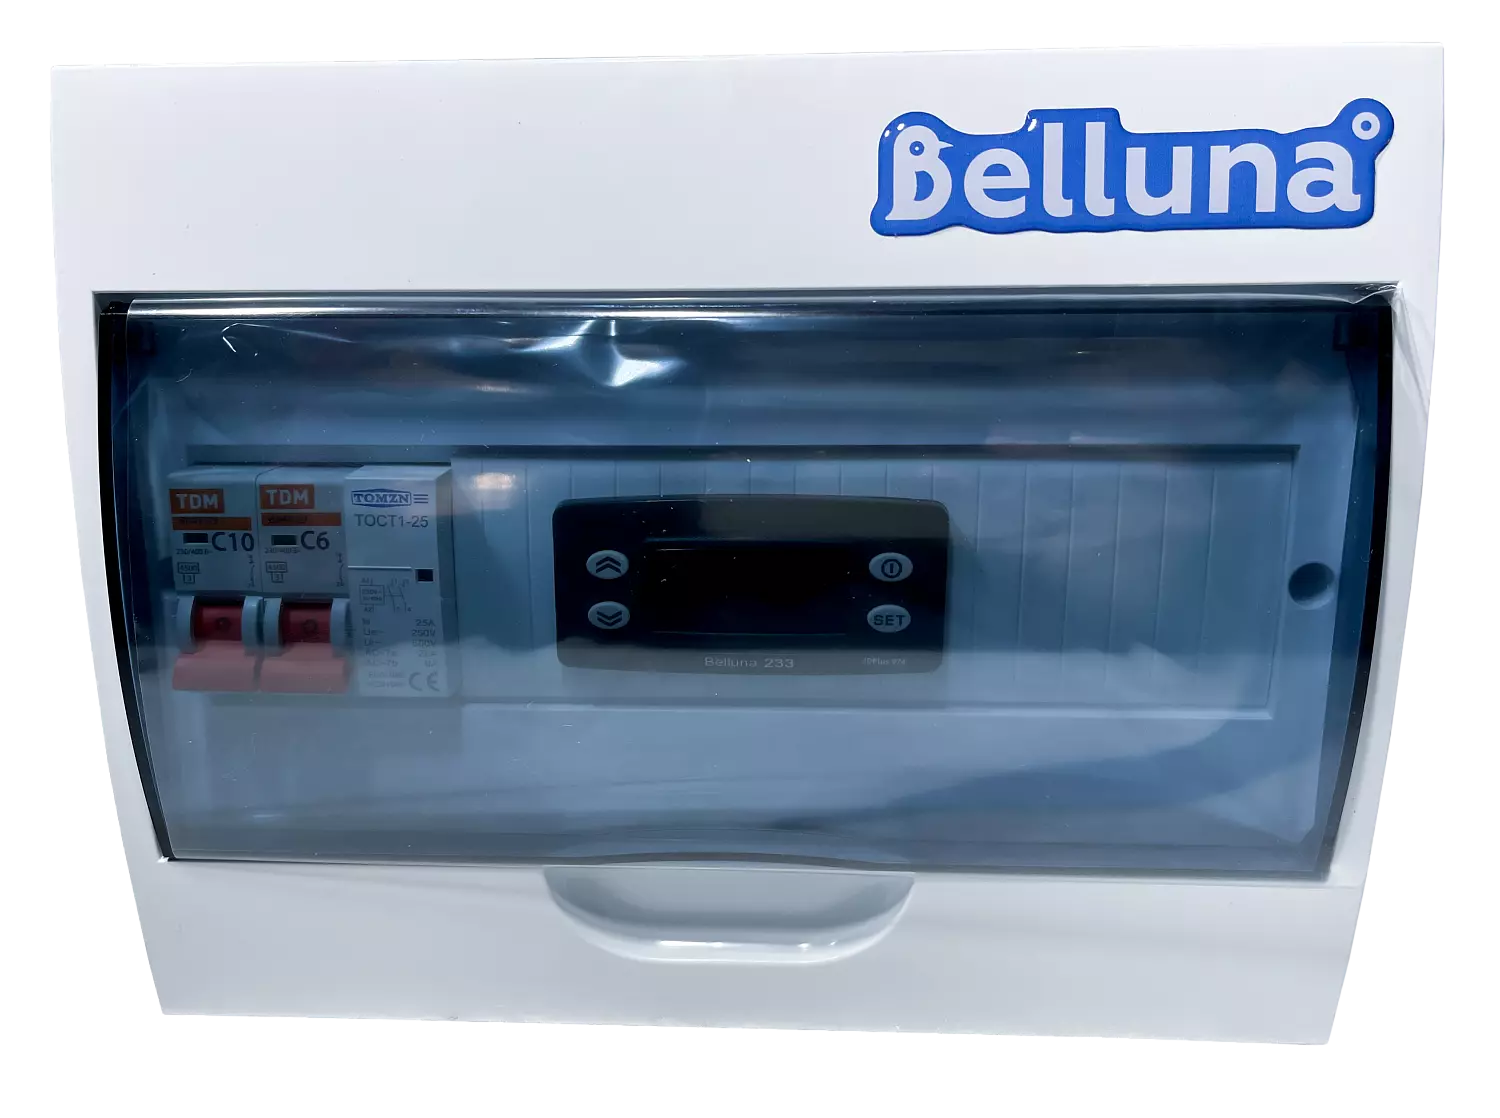 сплит-система Belluna S342 Липецк